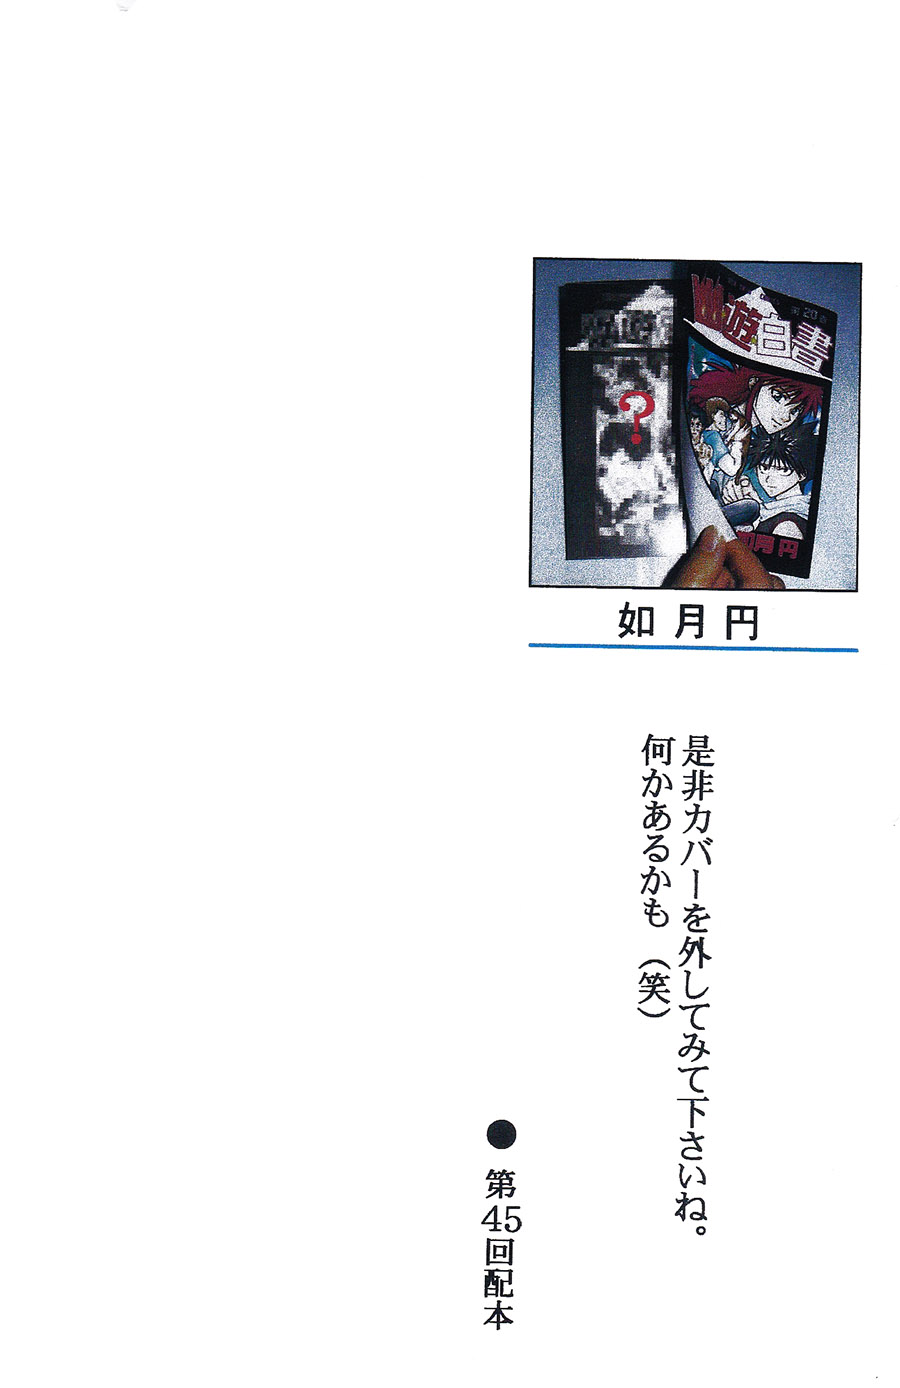 【漫画】Box Twin/如月円《幽游白书第20卷》NO.45 Img_5047